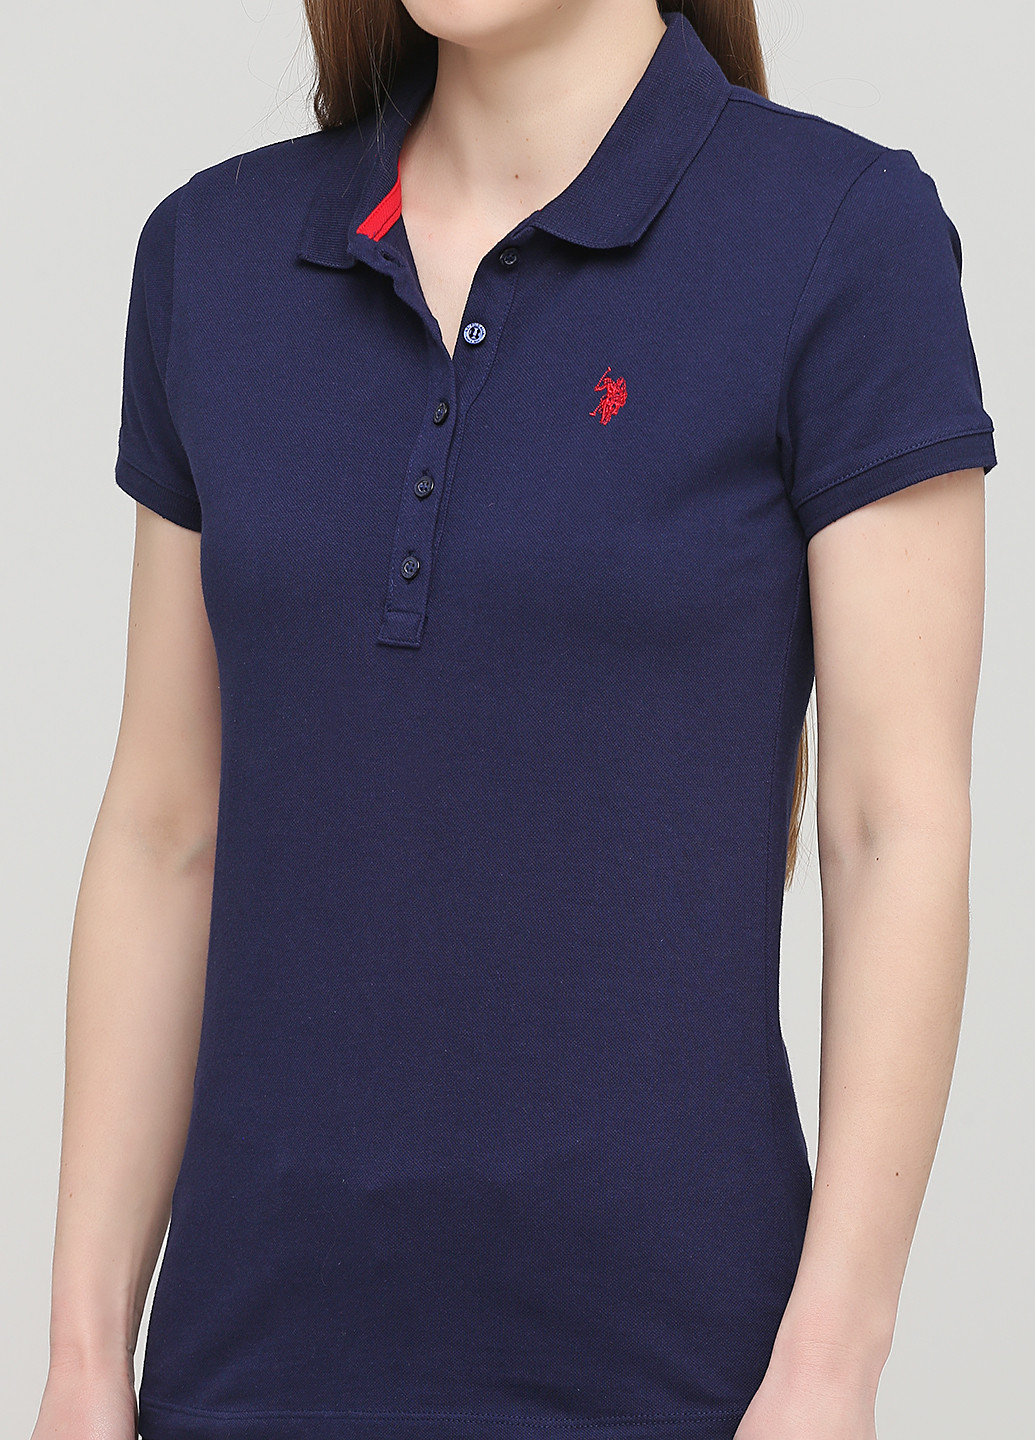 Темно-синяя женская футболка-поло U.S. Polo Assn. с логотипом